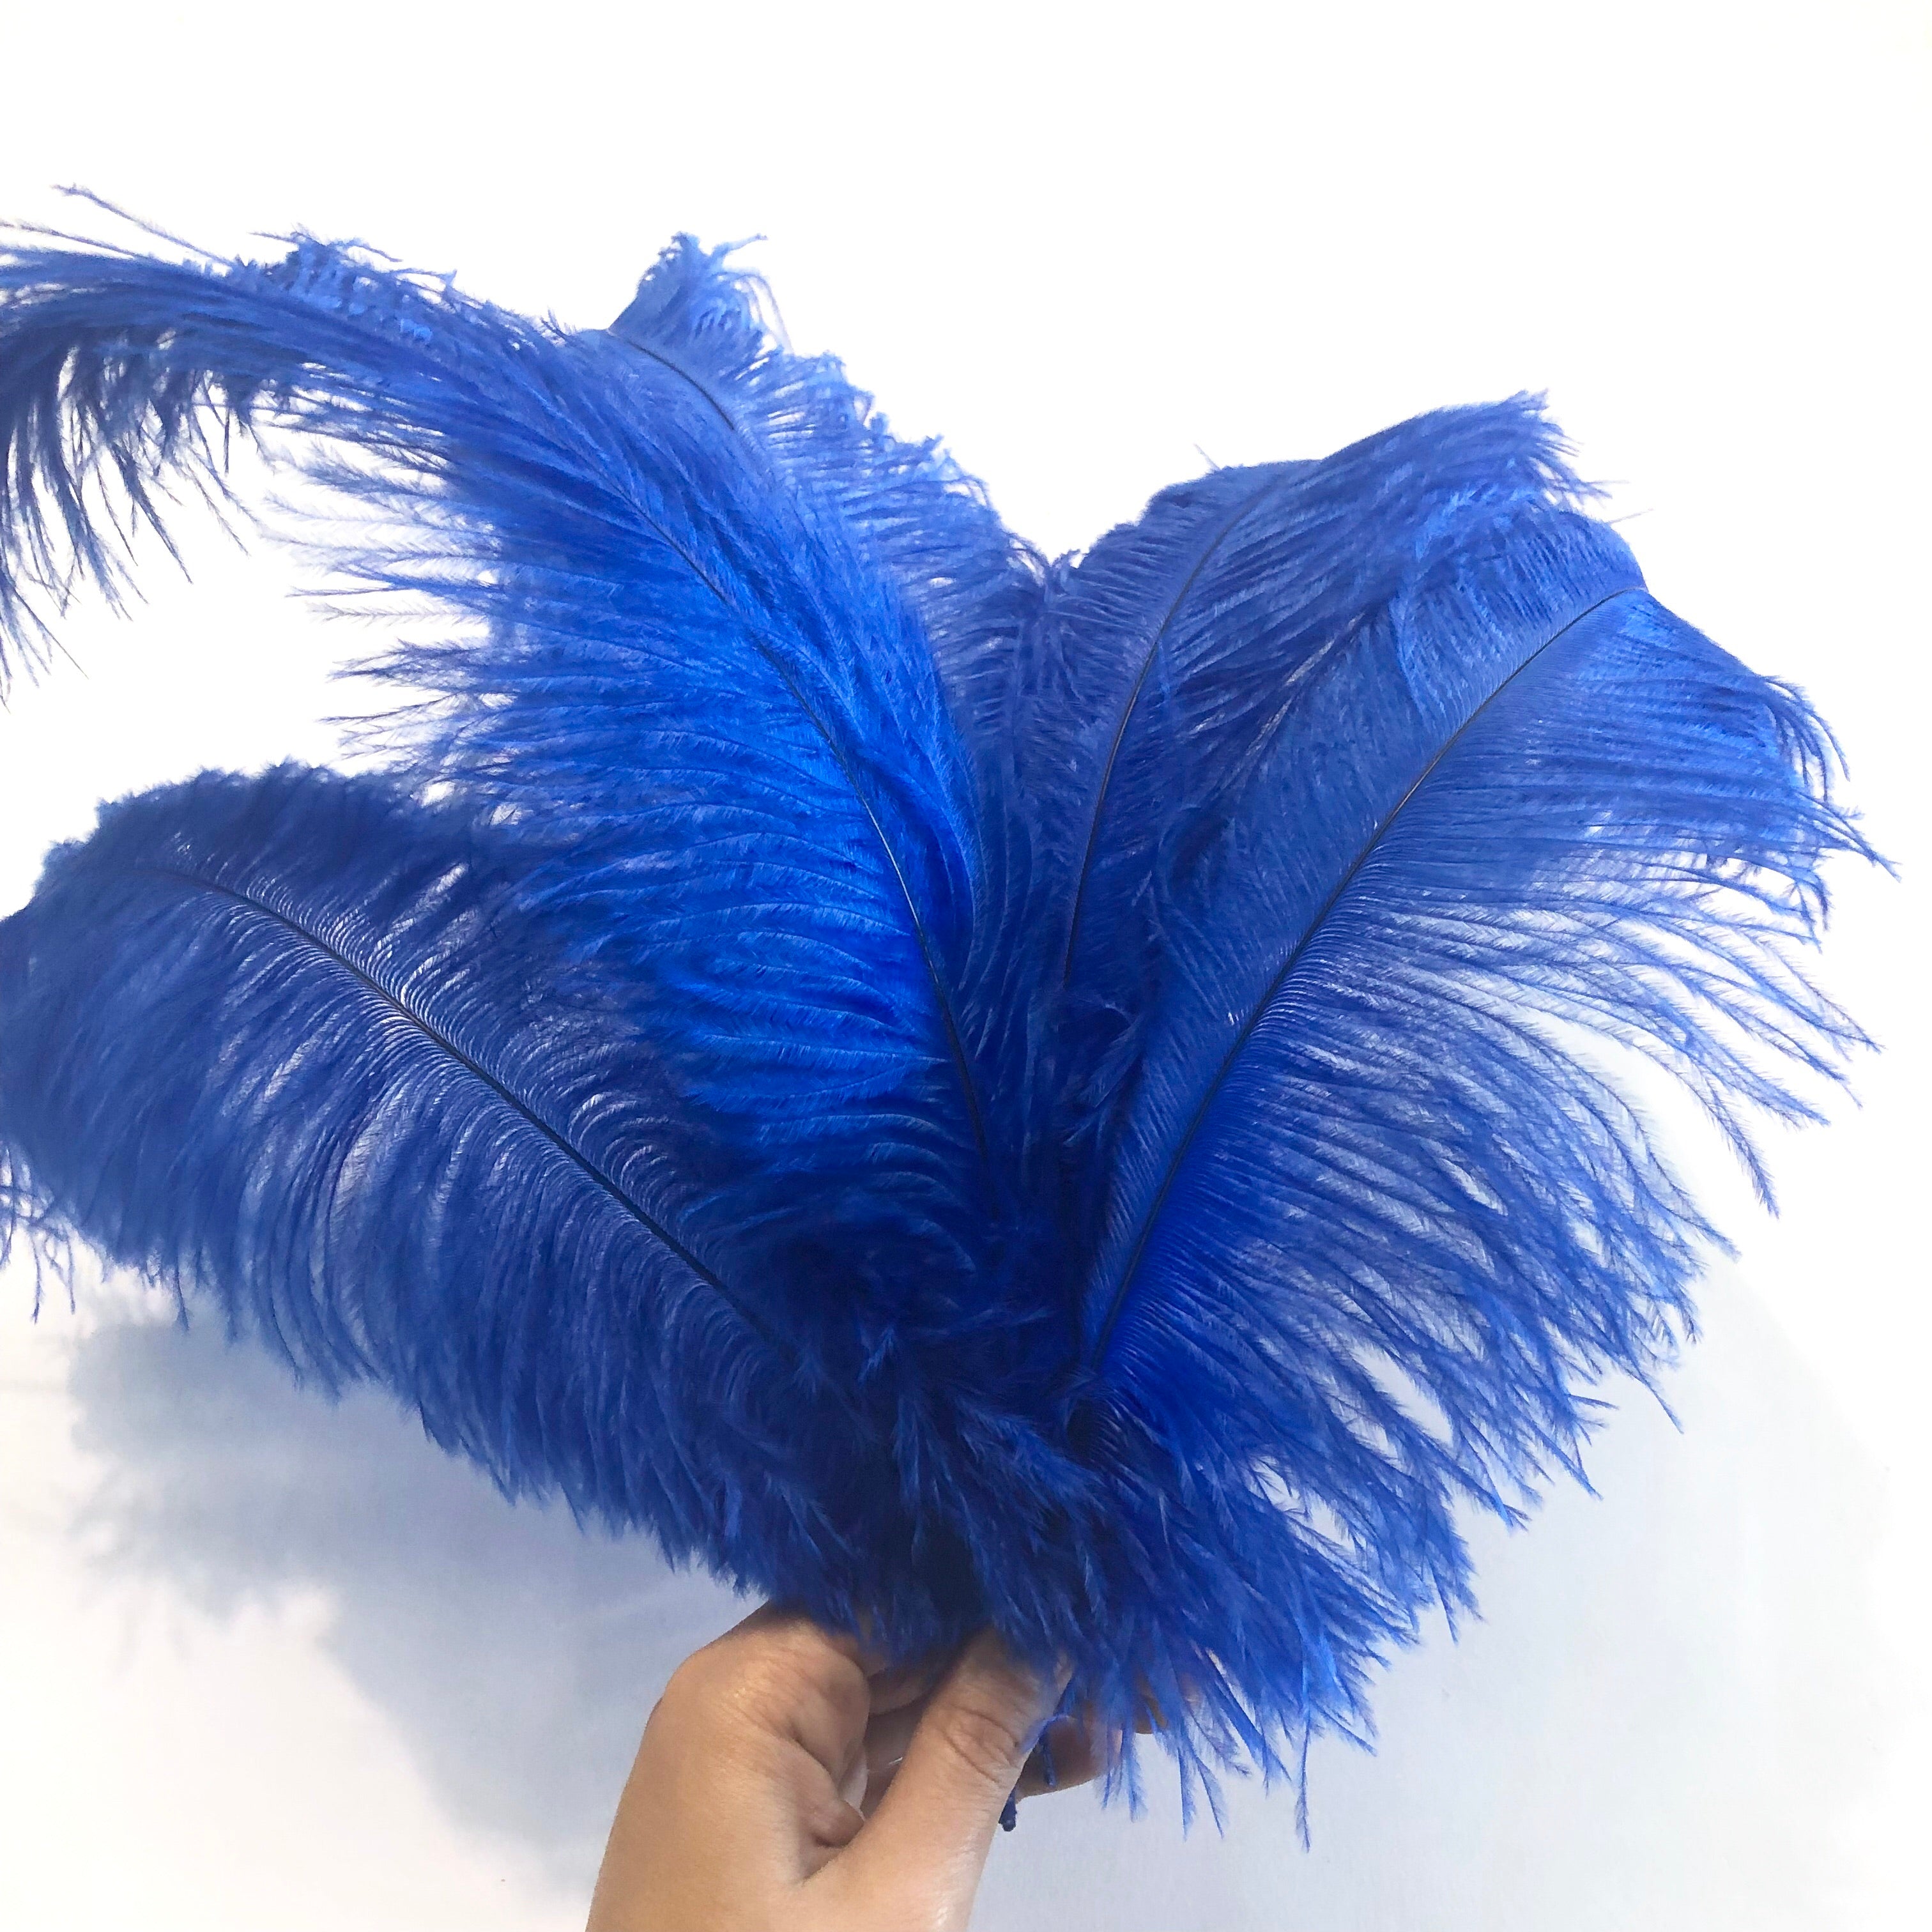 Ostrich Blondine Feather 25-40cm x 5 pcs - Royal Blue ((SECONDS))